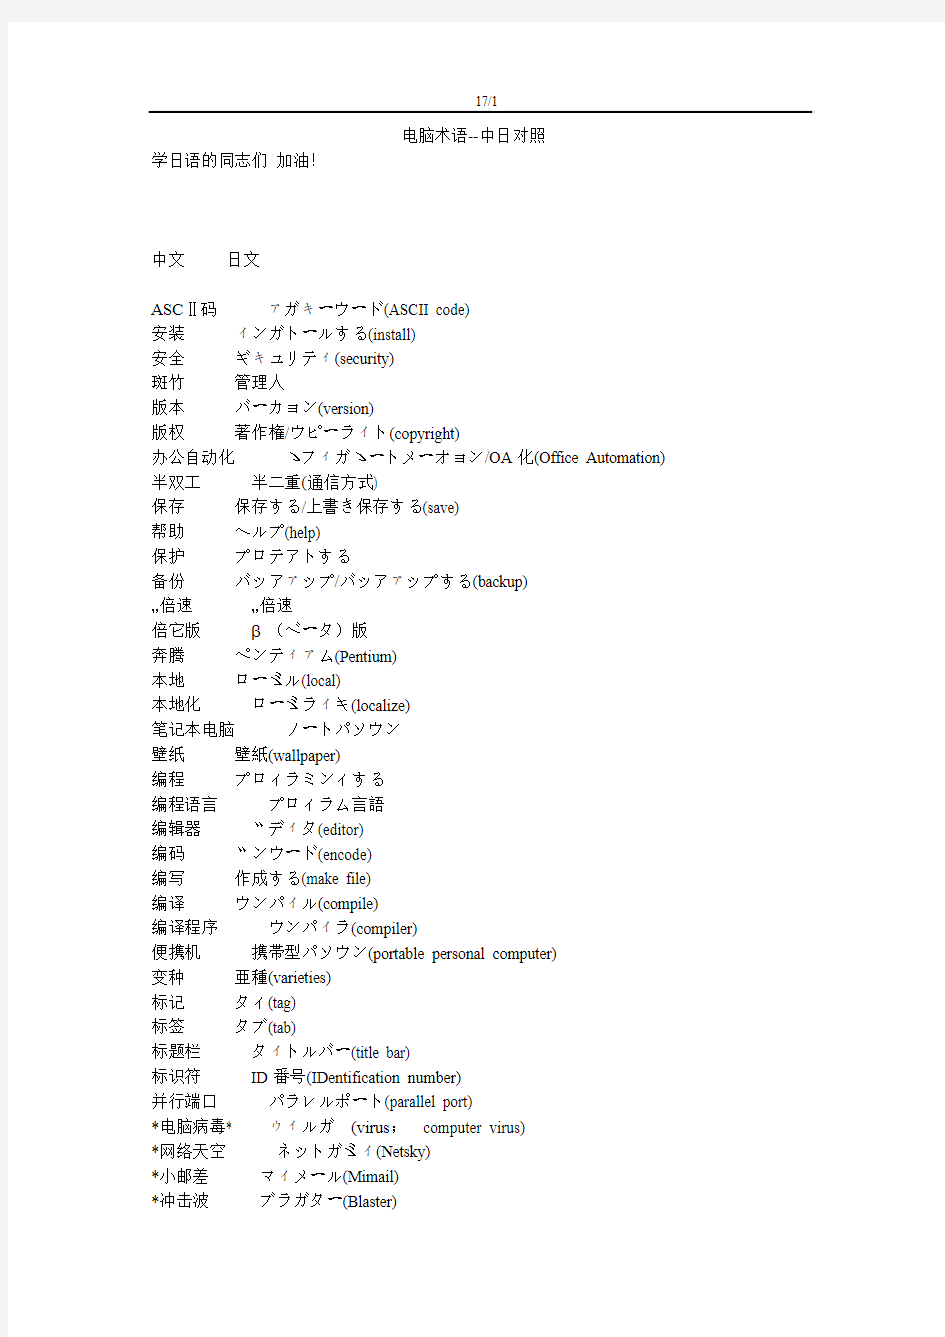 日语的电脑术语大集合